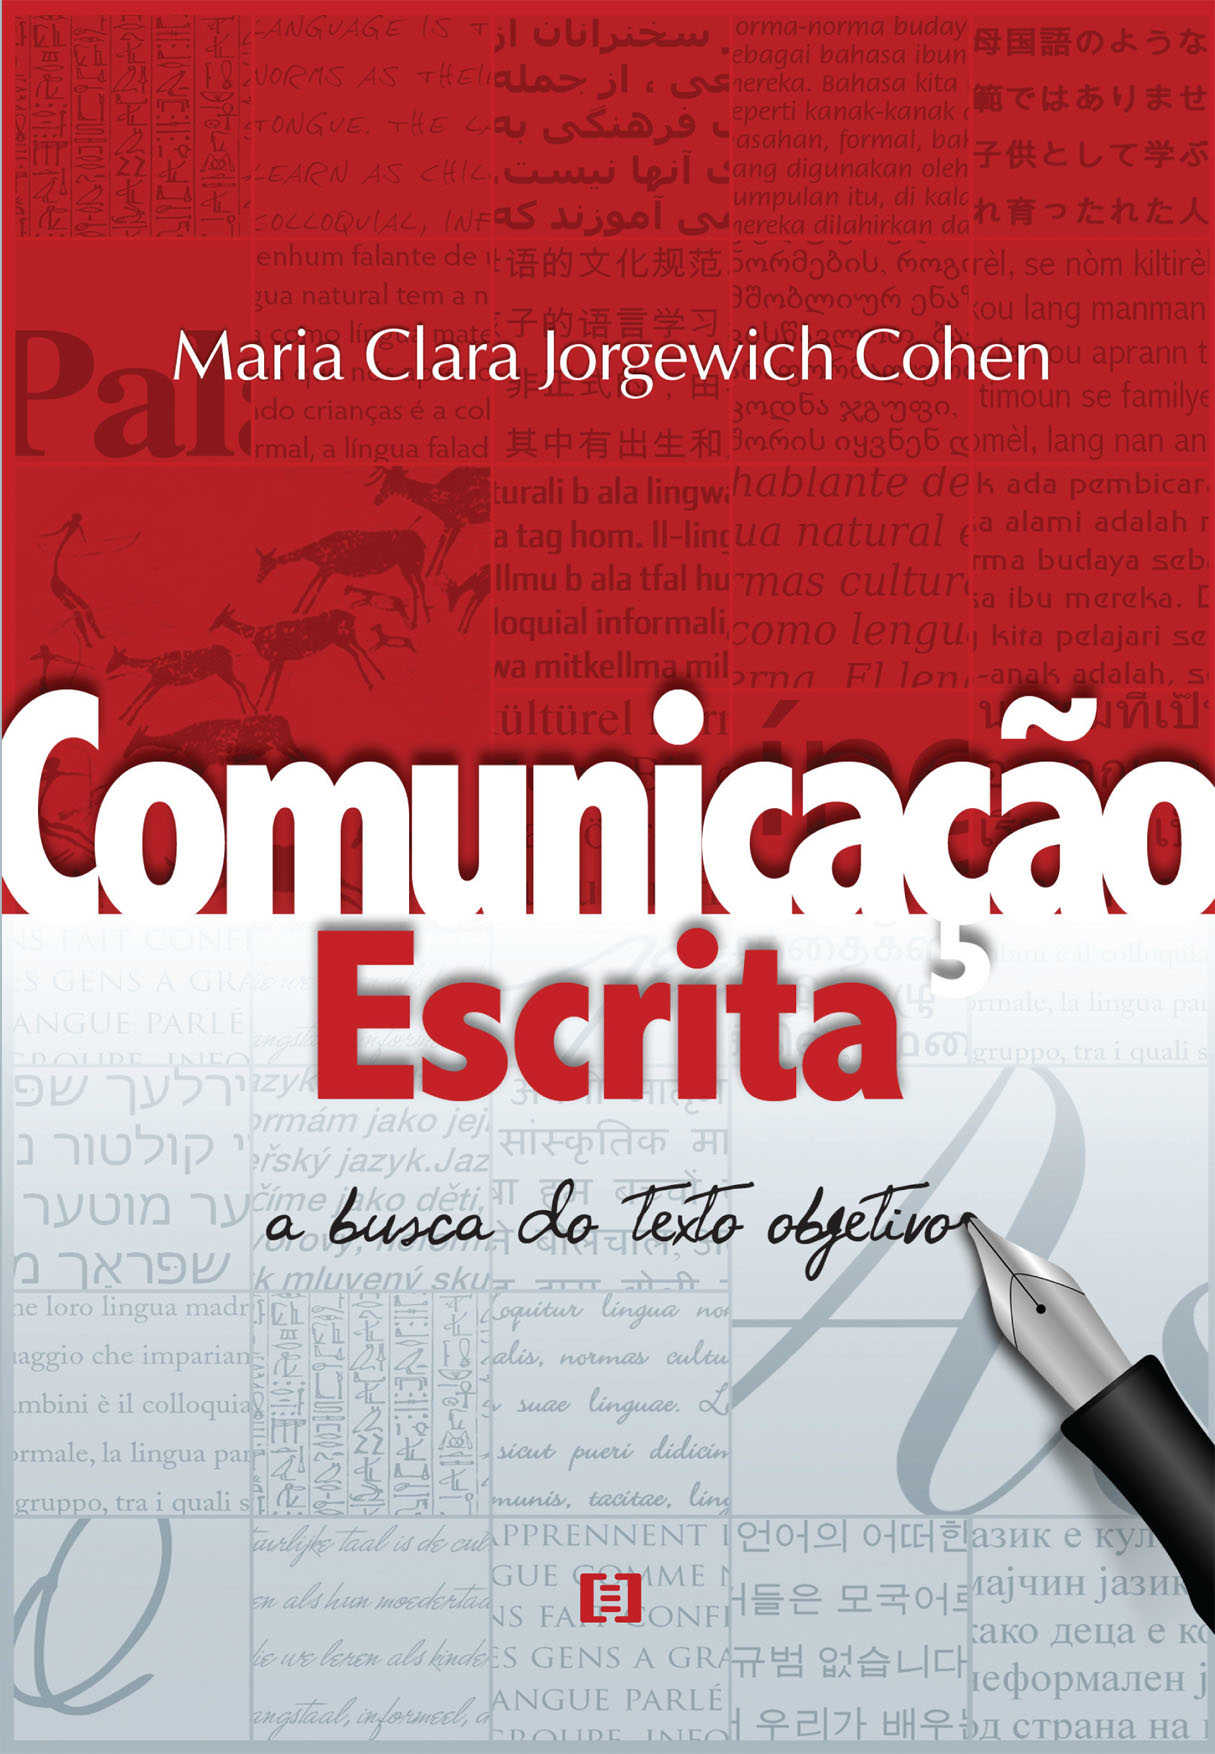 Comunicação escrita: A busca do texto objetivo